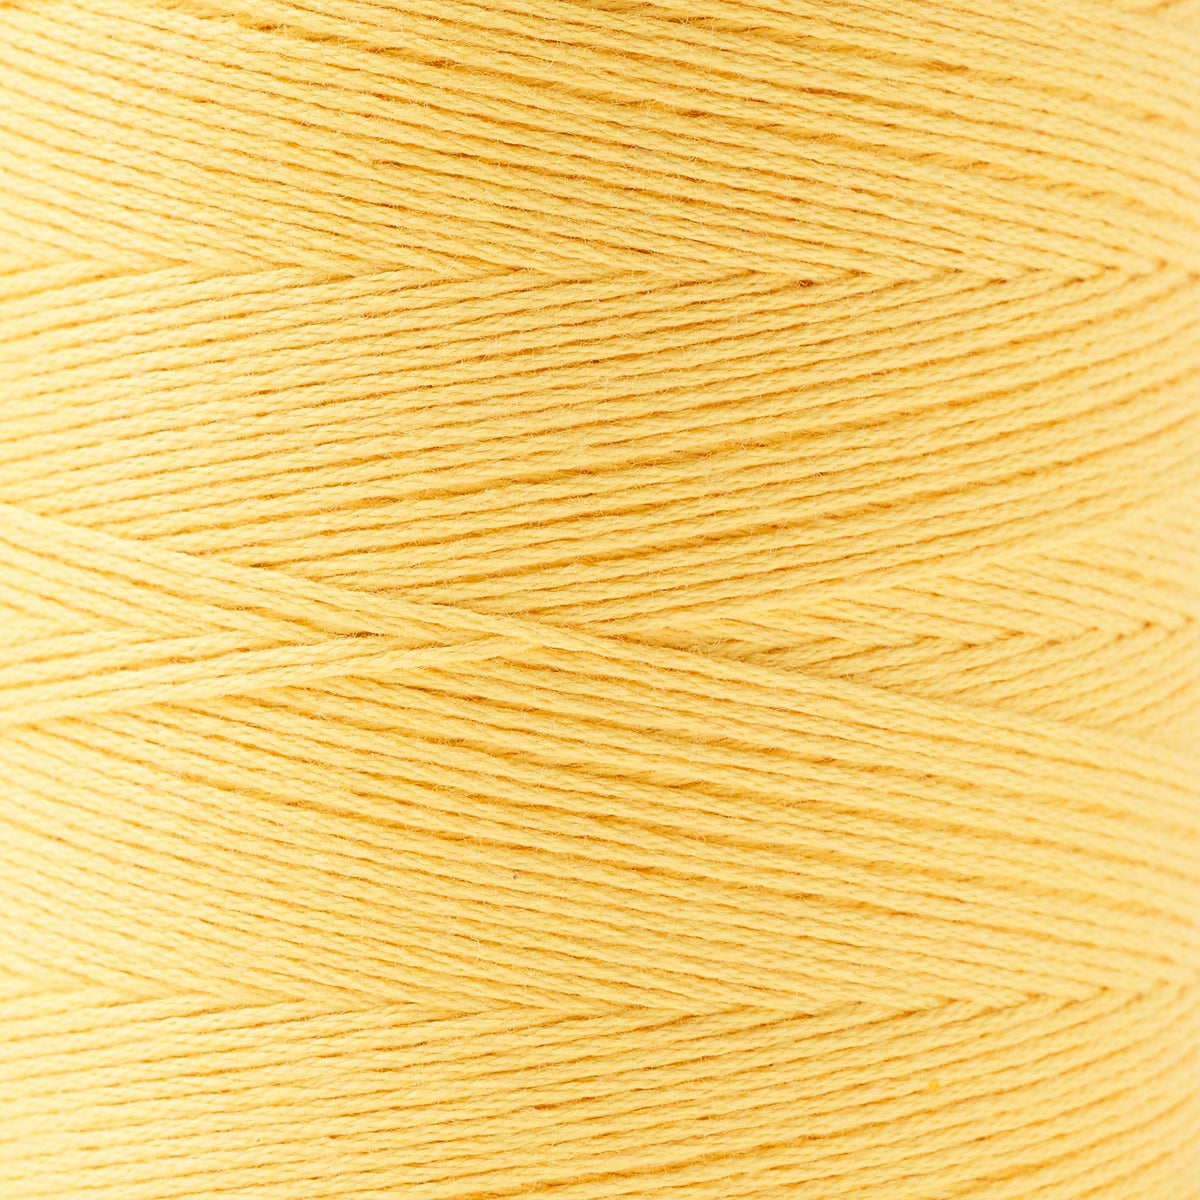 8/4 Un-Mercerized Brassard Cotton Weaving Yarn ~ Beige